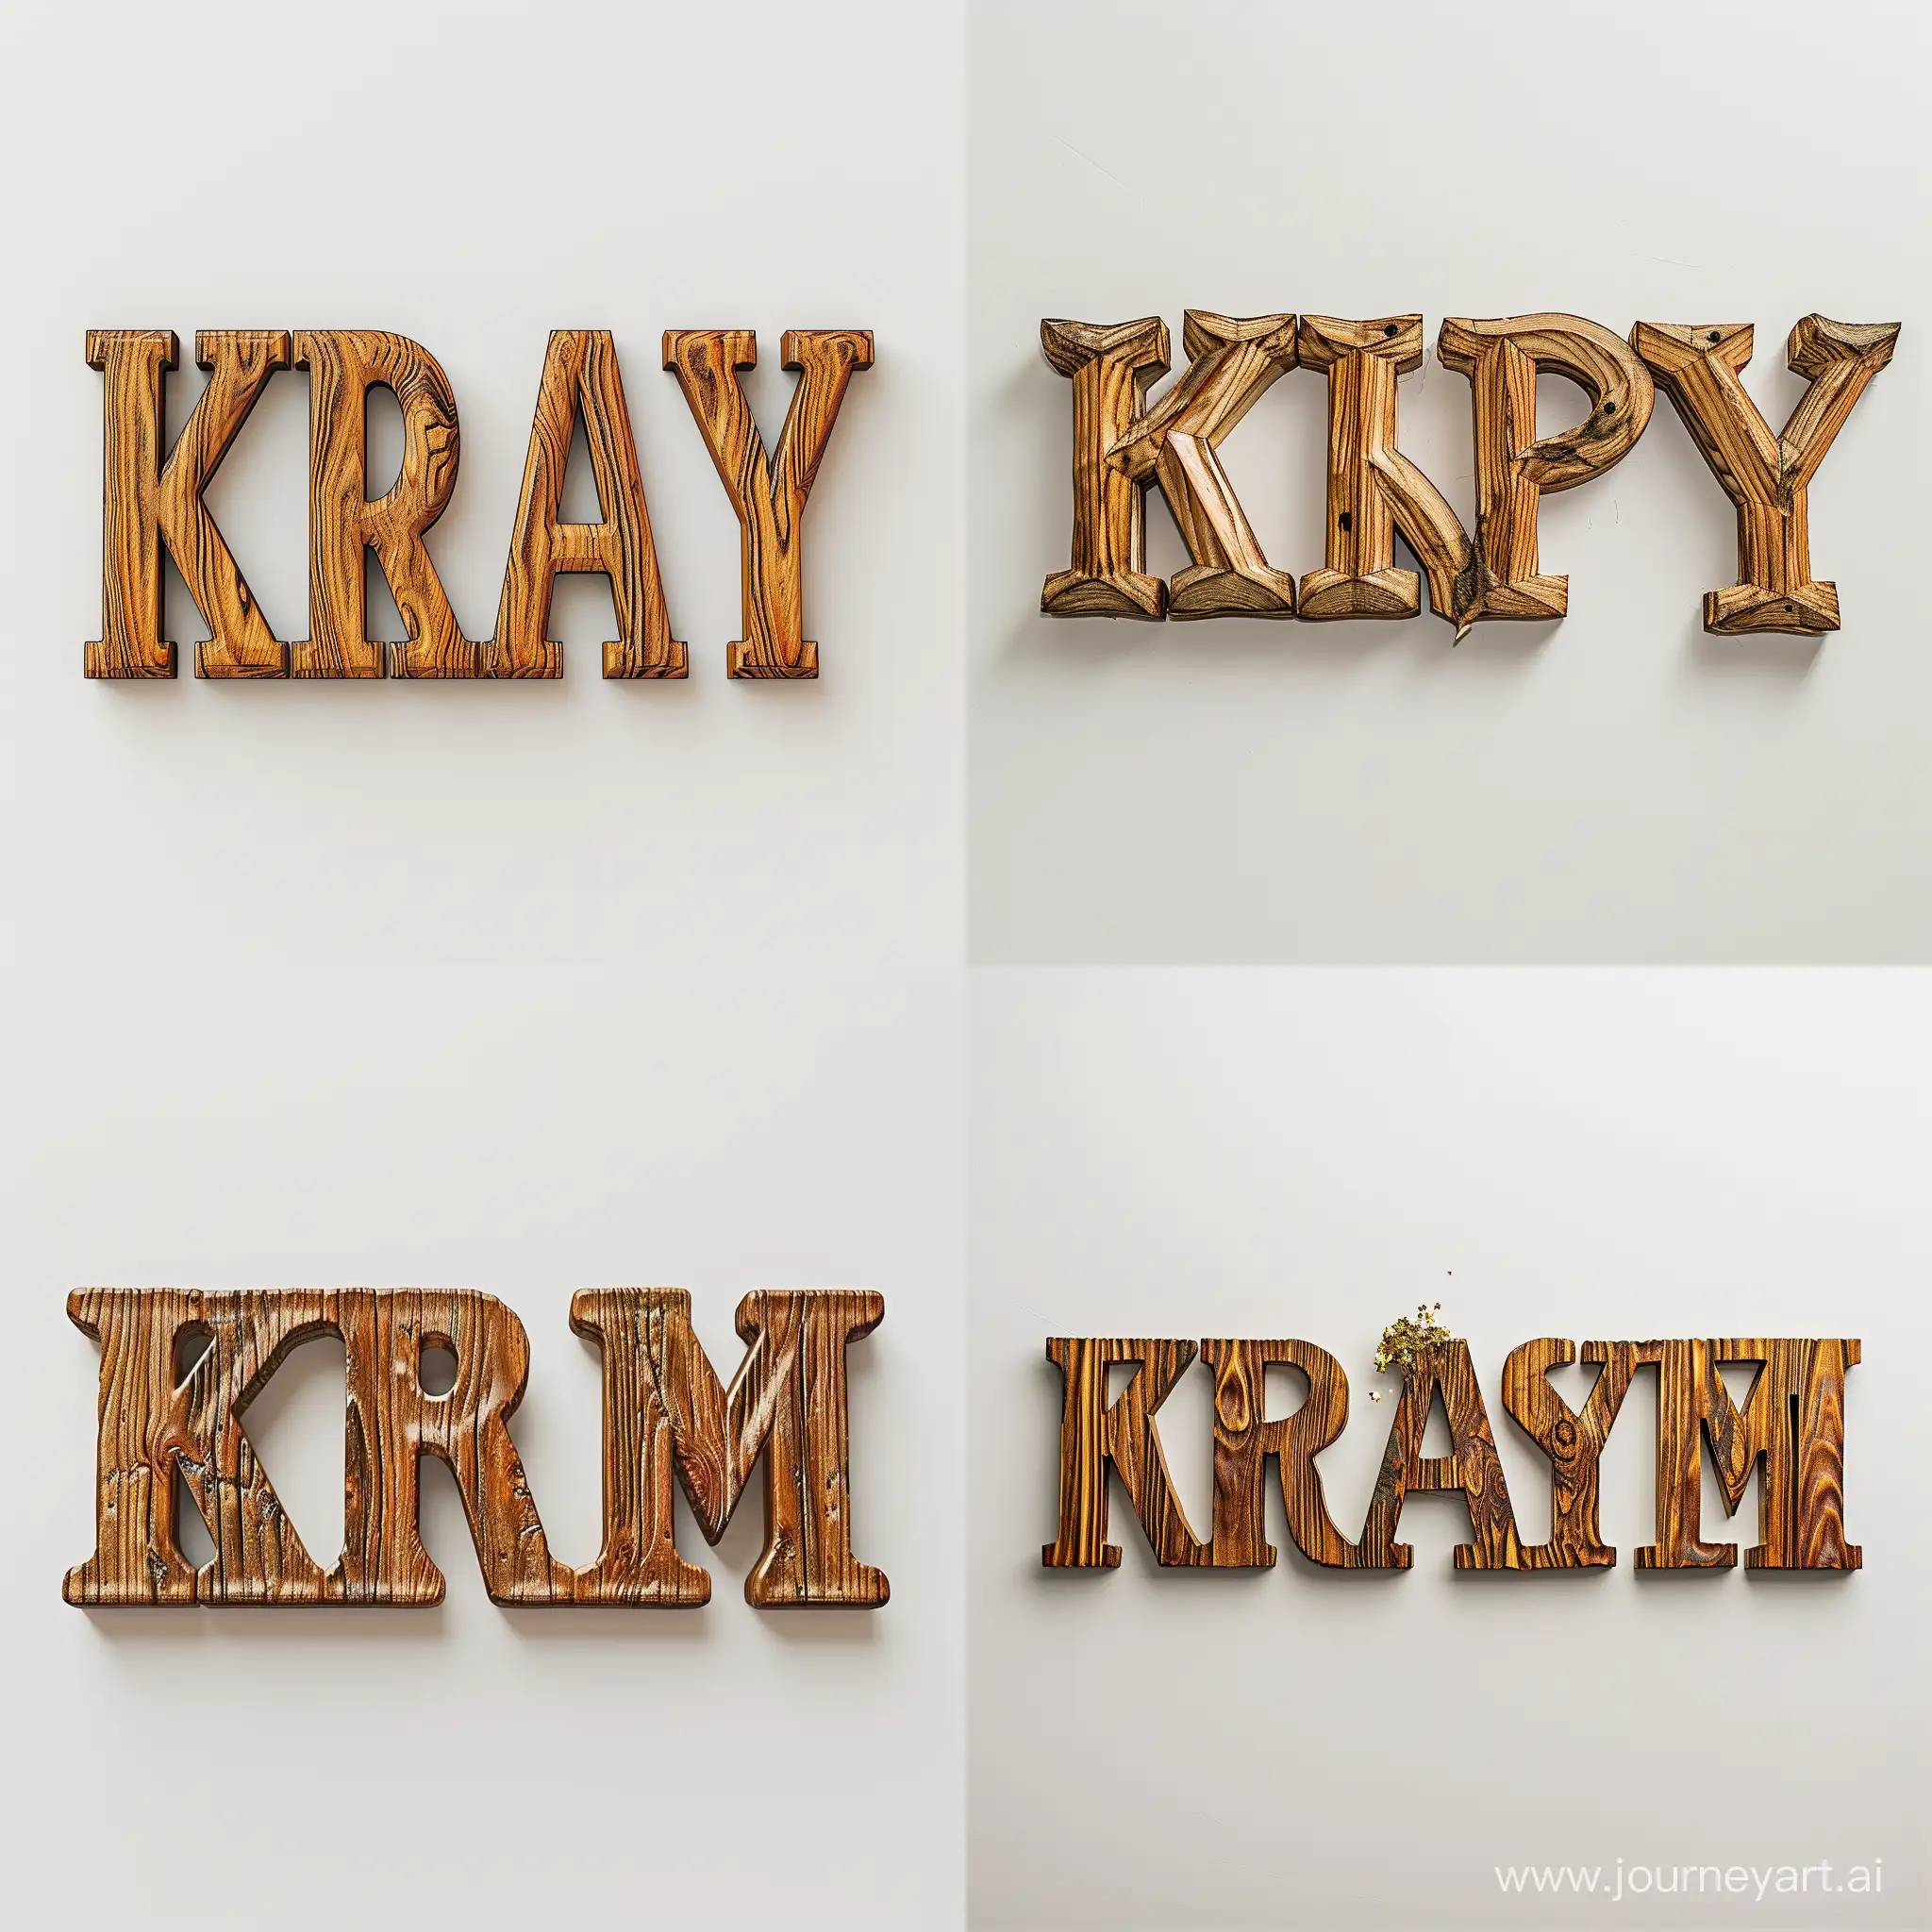 extruded wooden text "K R A S Y M I R" on white background